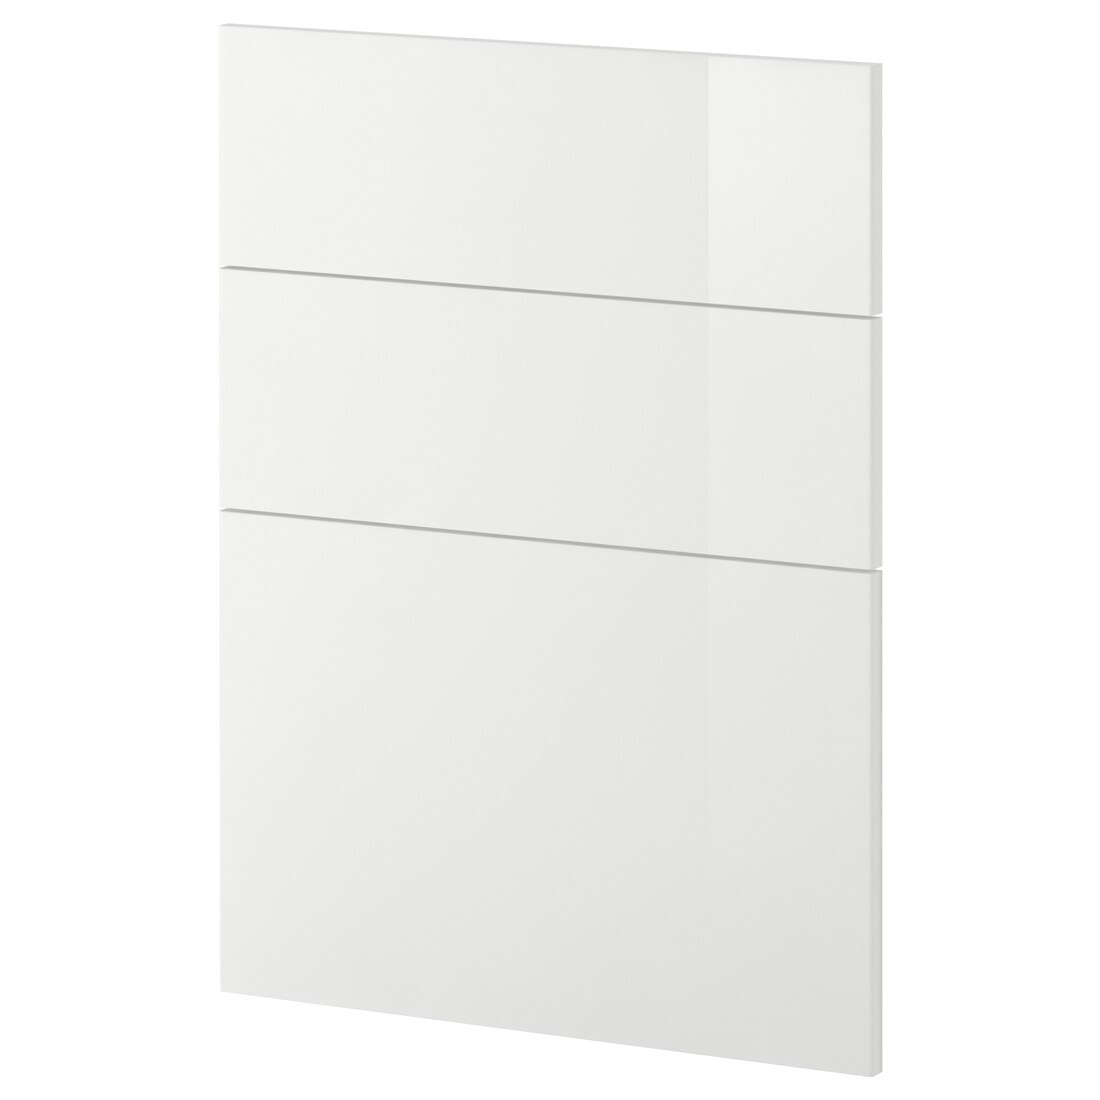 IKEA METOD МЕТОД 3 фасада для посудомоечной машины, Ringhult белый, 60 см 09449892 094.498.92